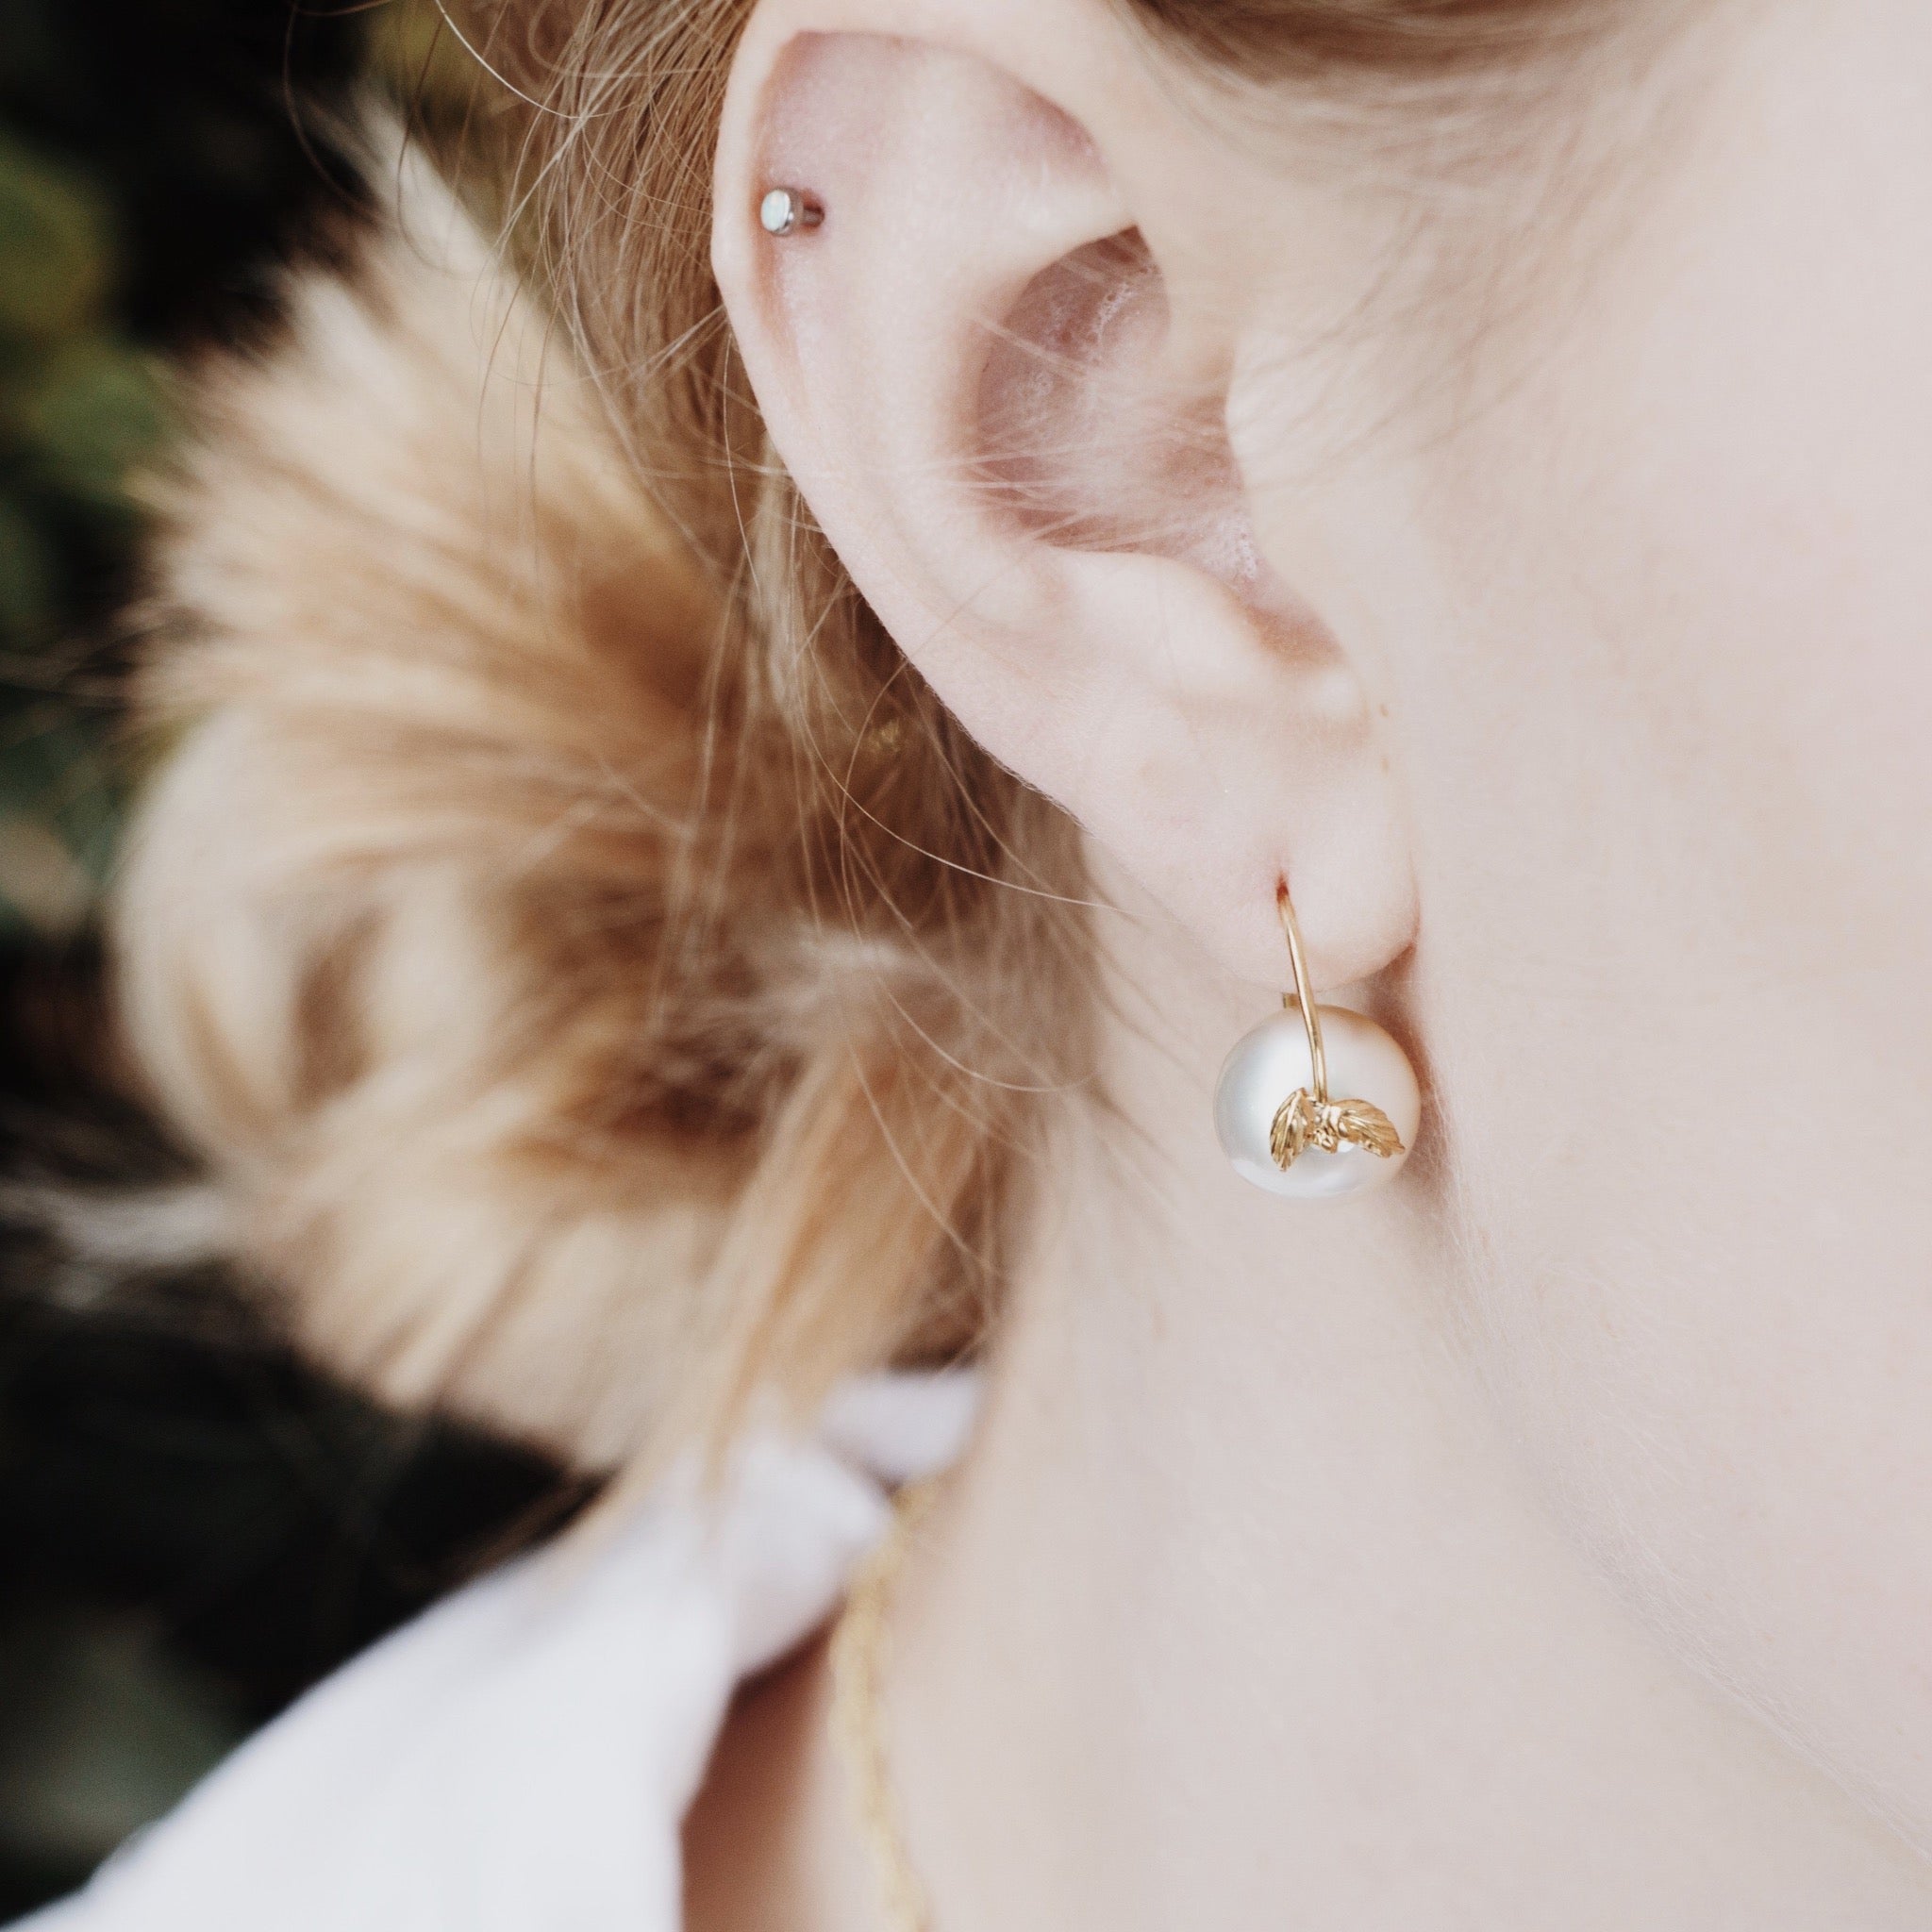 Pearl of Great Price Sterling Silver & Pearl Hoop Earrings – Tracy Hibsman  Studio